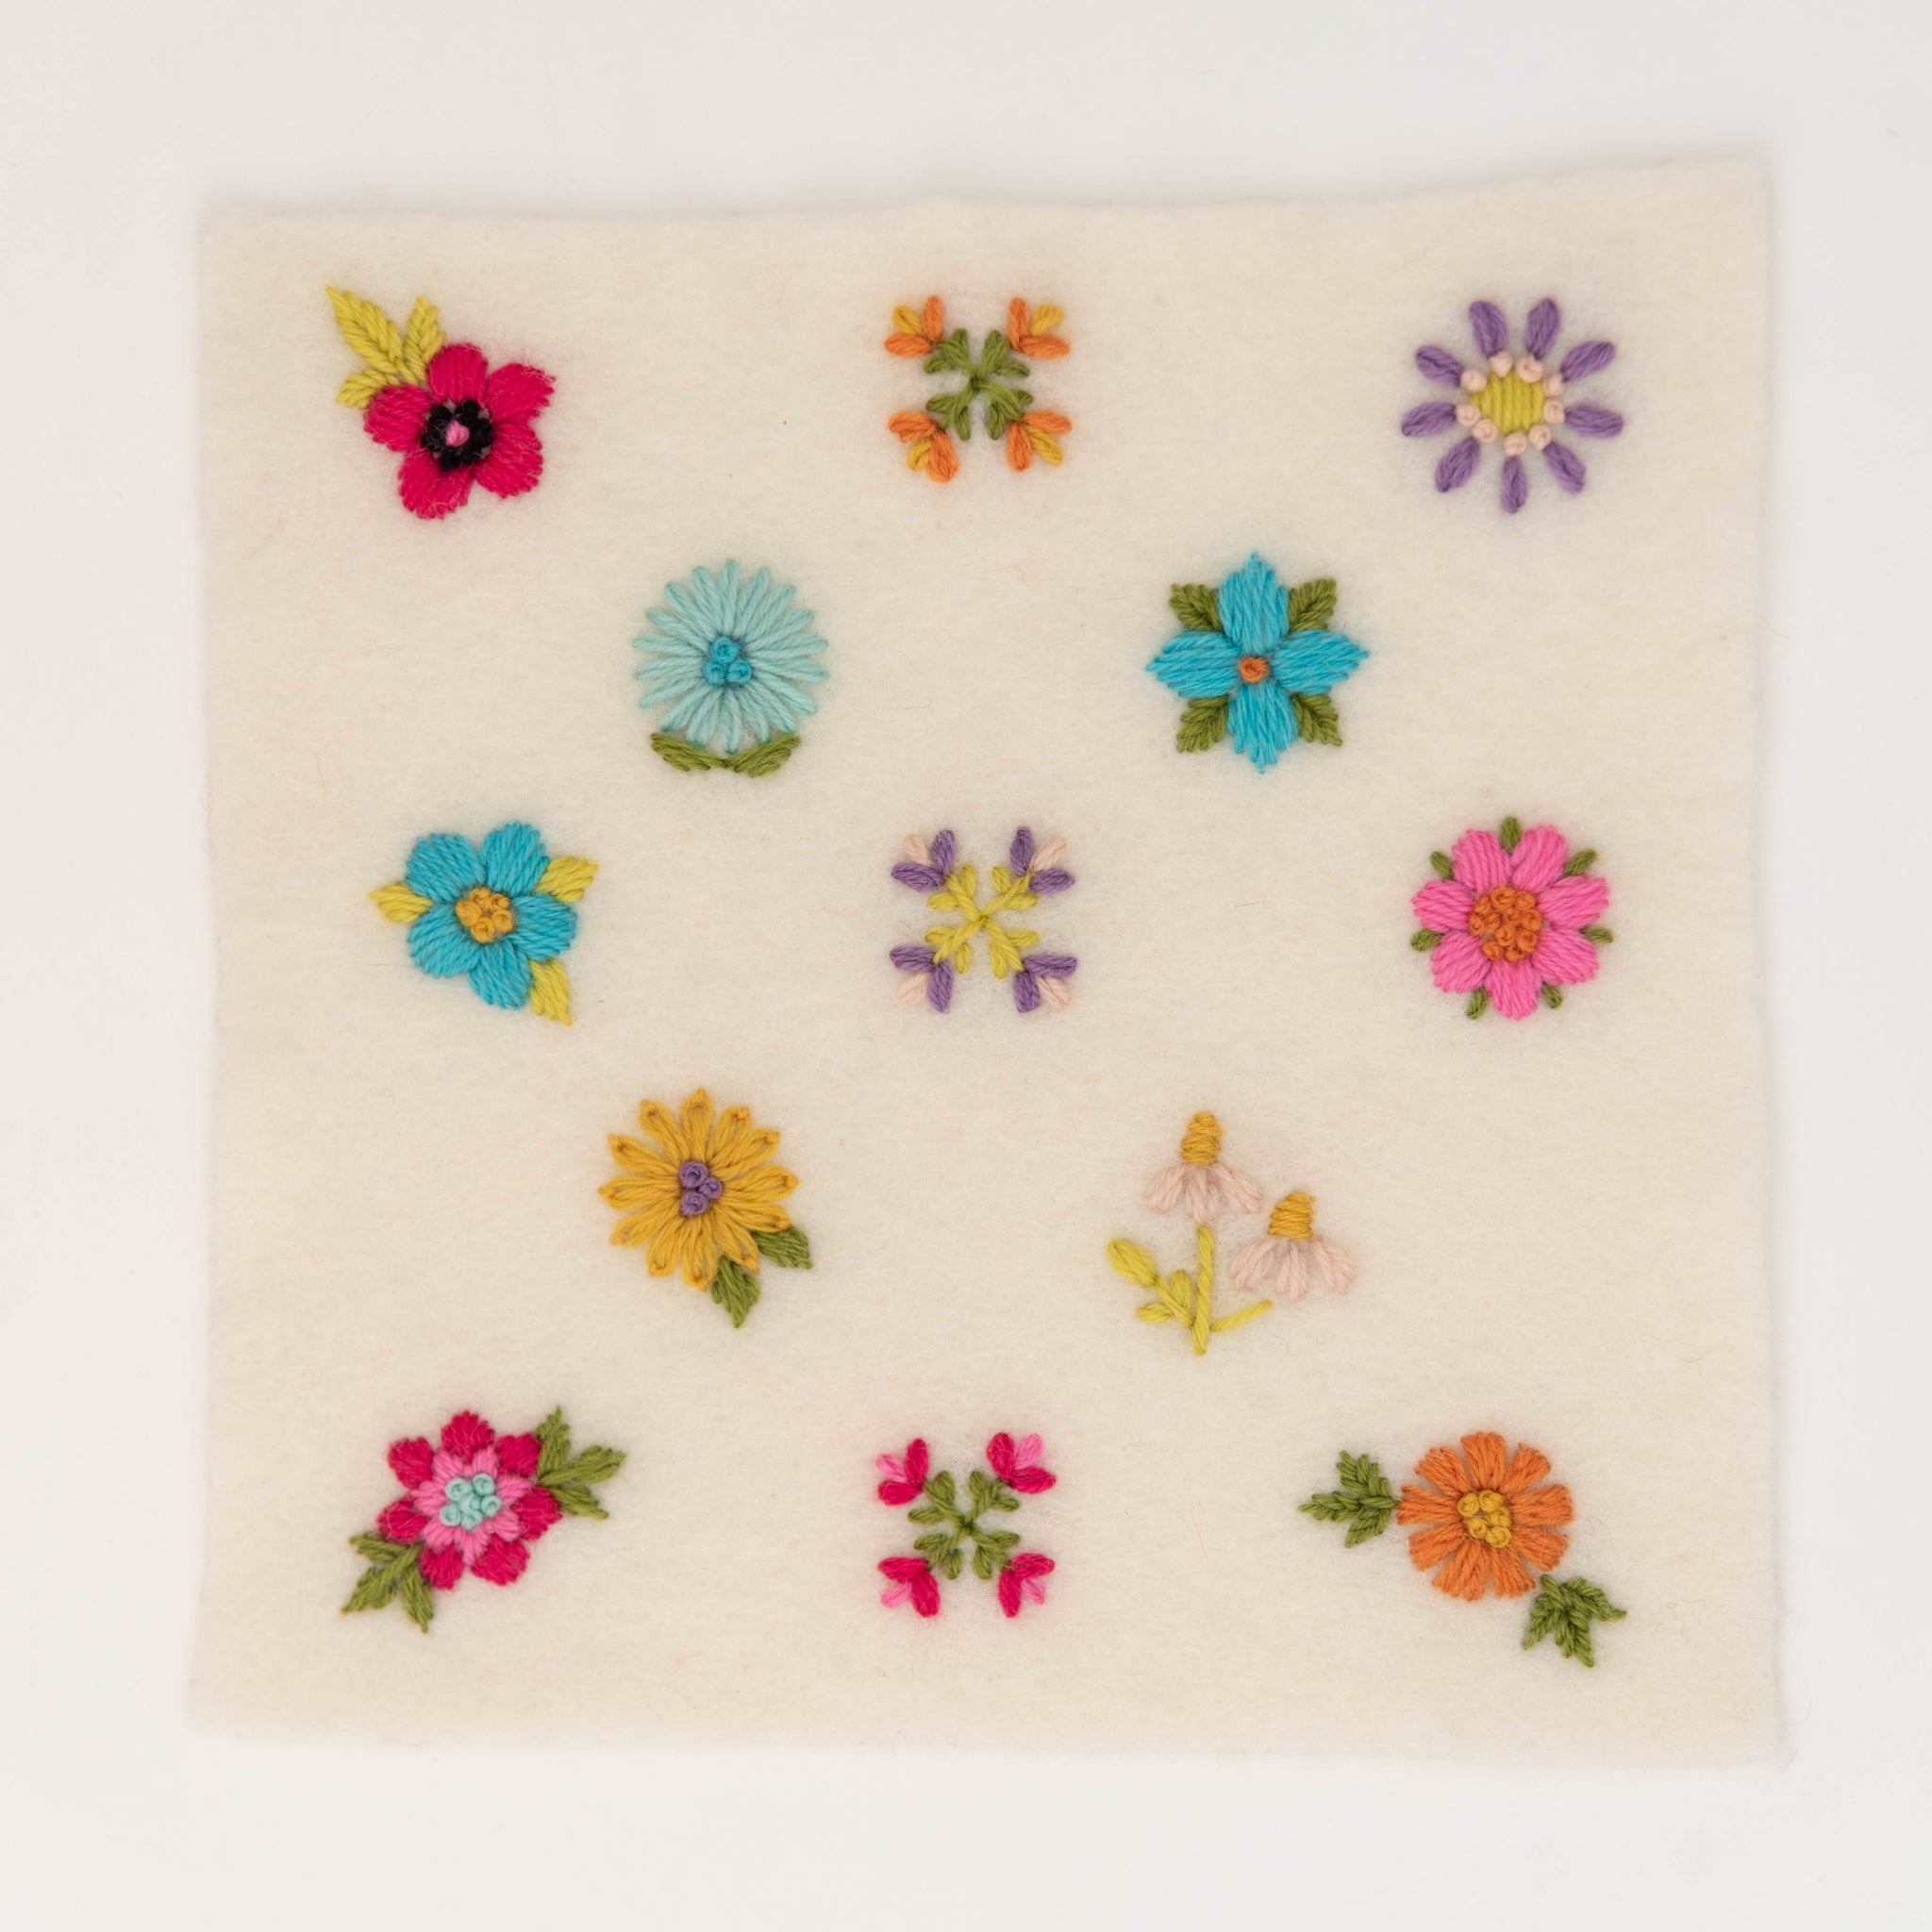 Scandi Flowers Stick & Stitch Embroidery Pattern – Ikigai Fiber